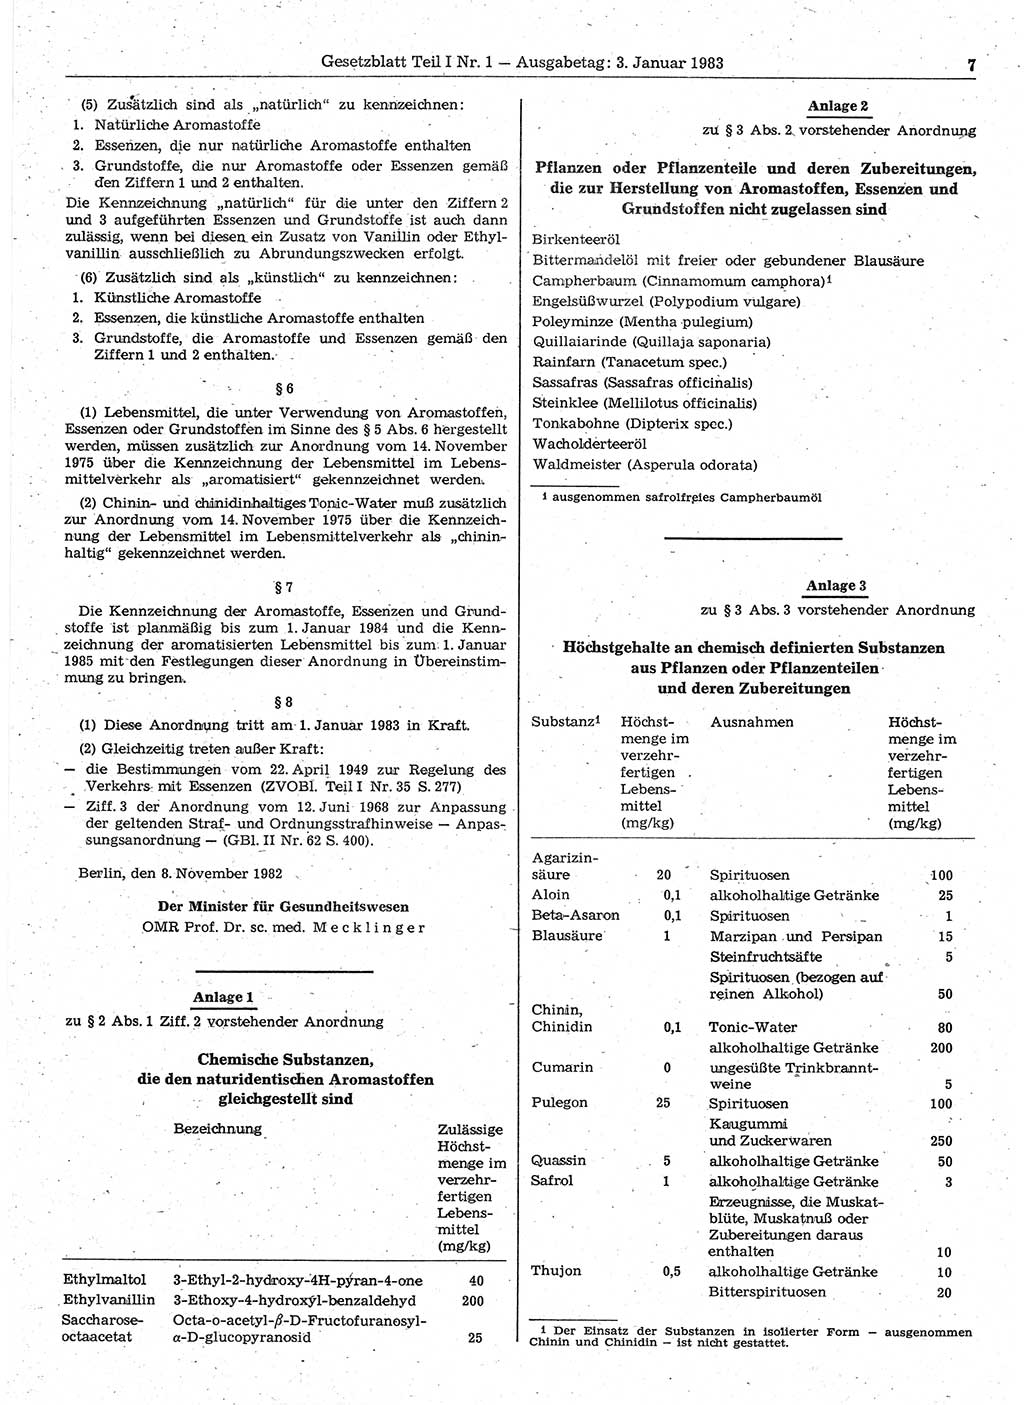 Gesetzblatt (GBl.) der Deutschen Demokratischen Republik (DDR) Teil Ⅰ 1983, Seite 7 (GBl. DDR Ⅰ 1983, S. 7)